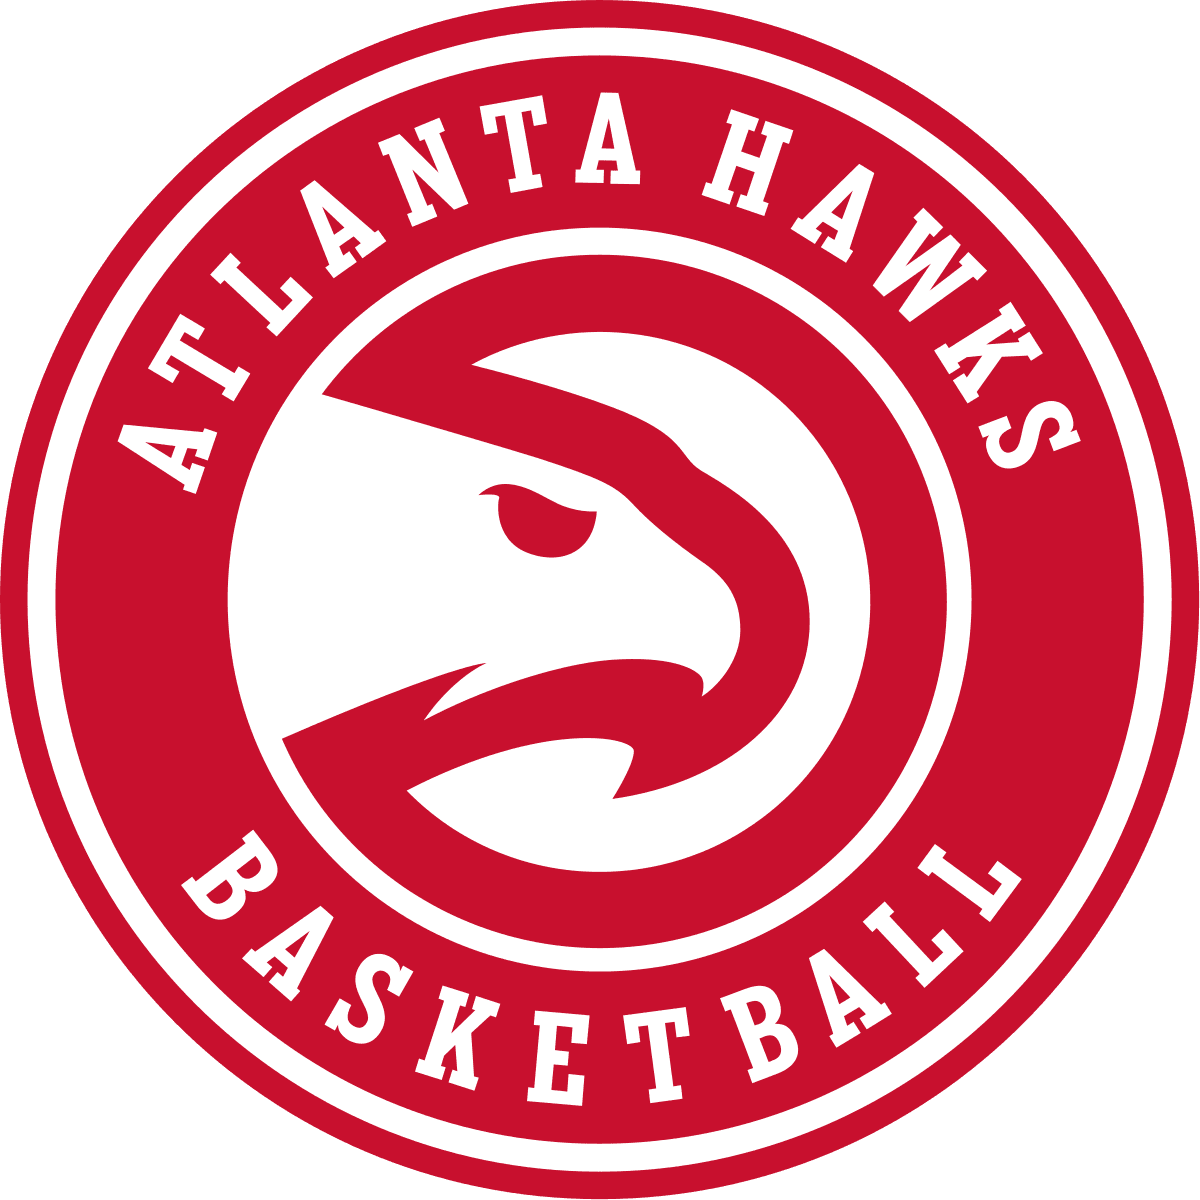 STS x Atlanta Hawks on March 20th